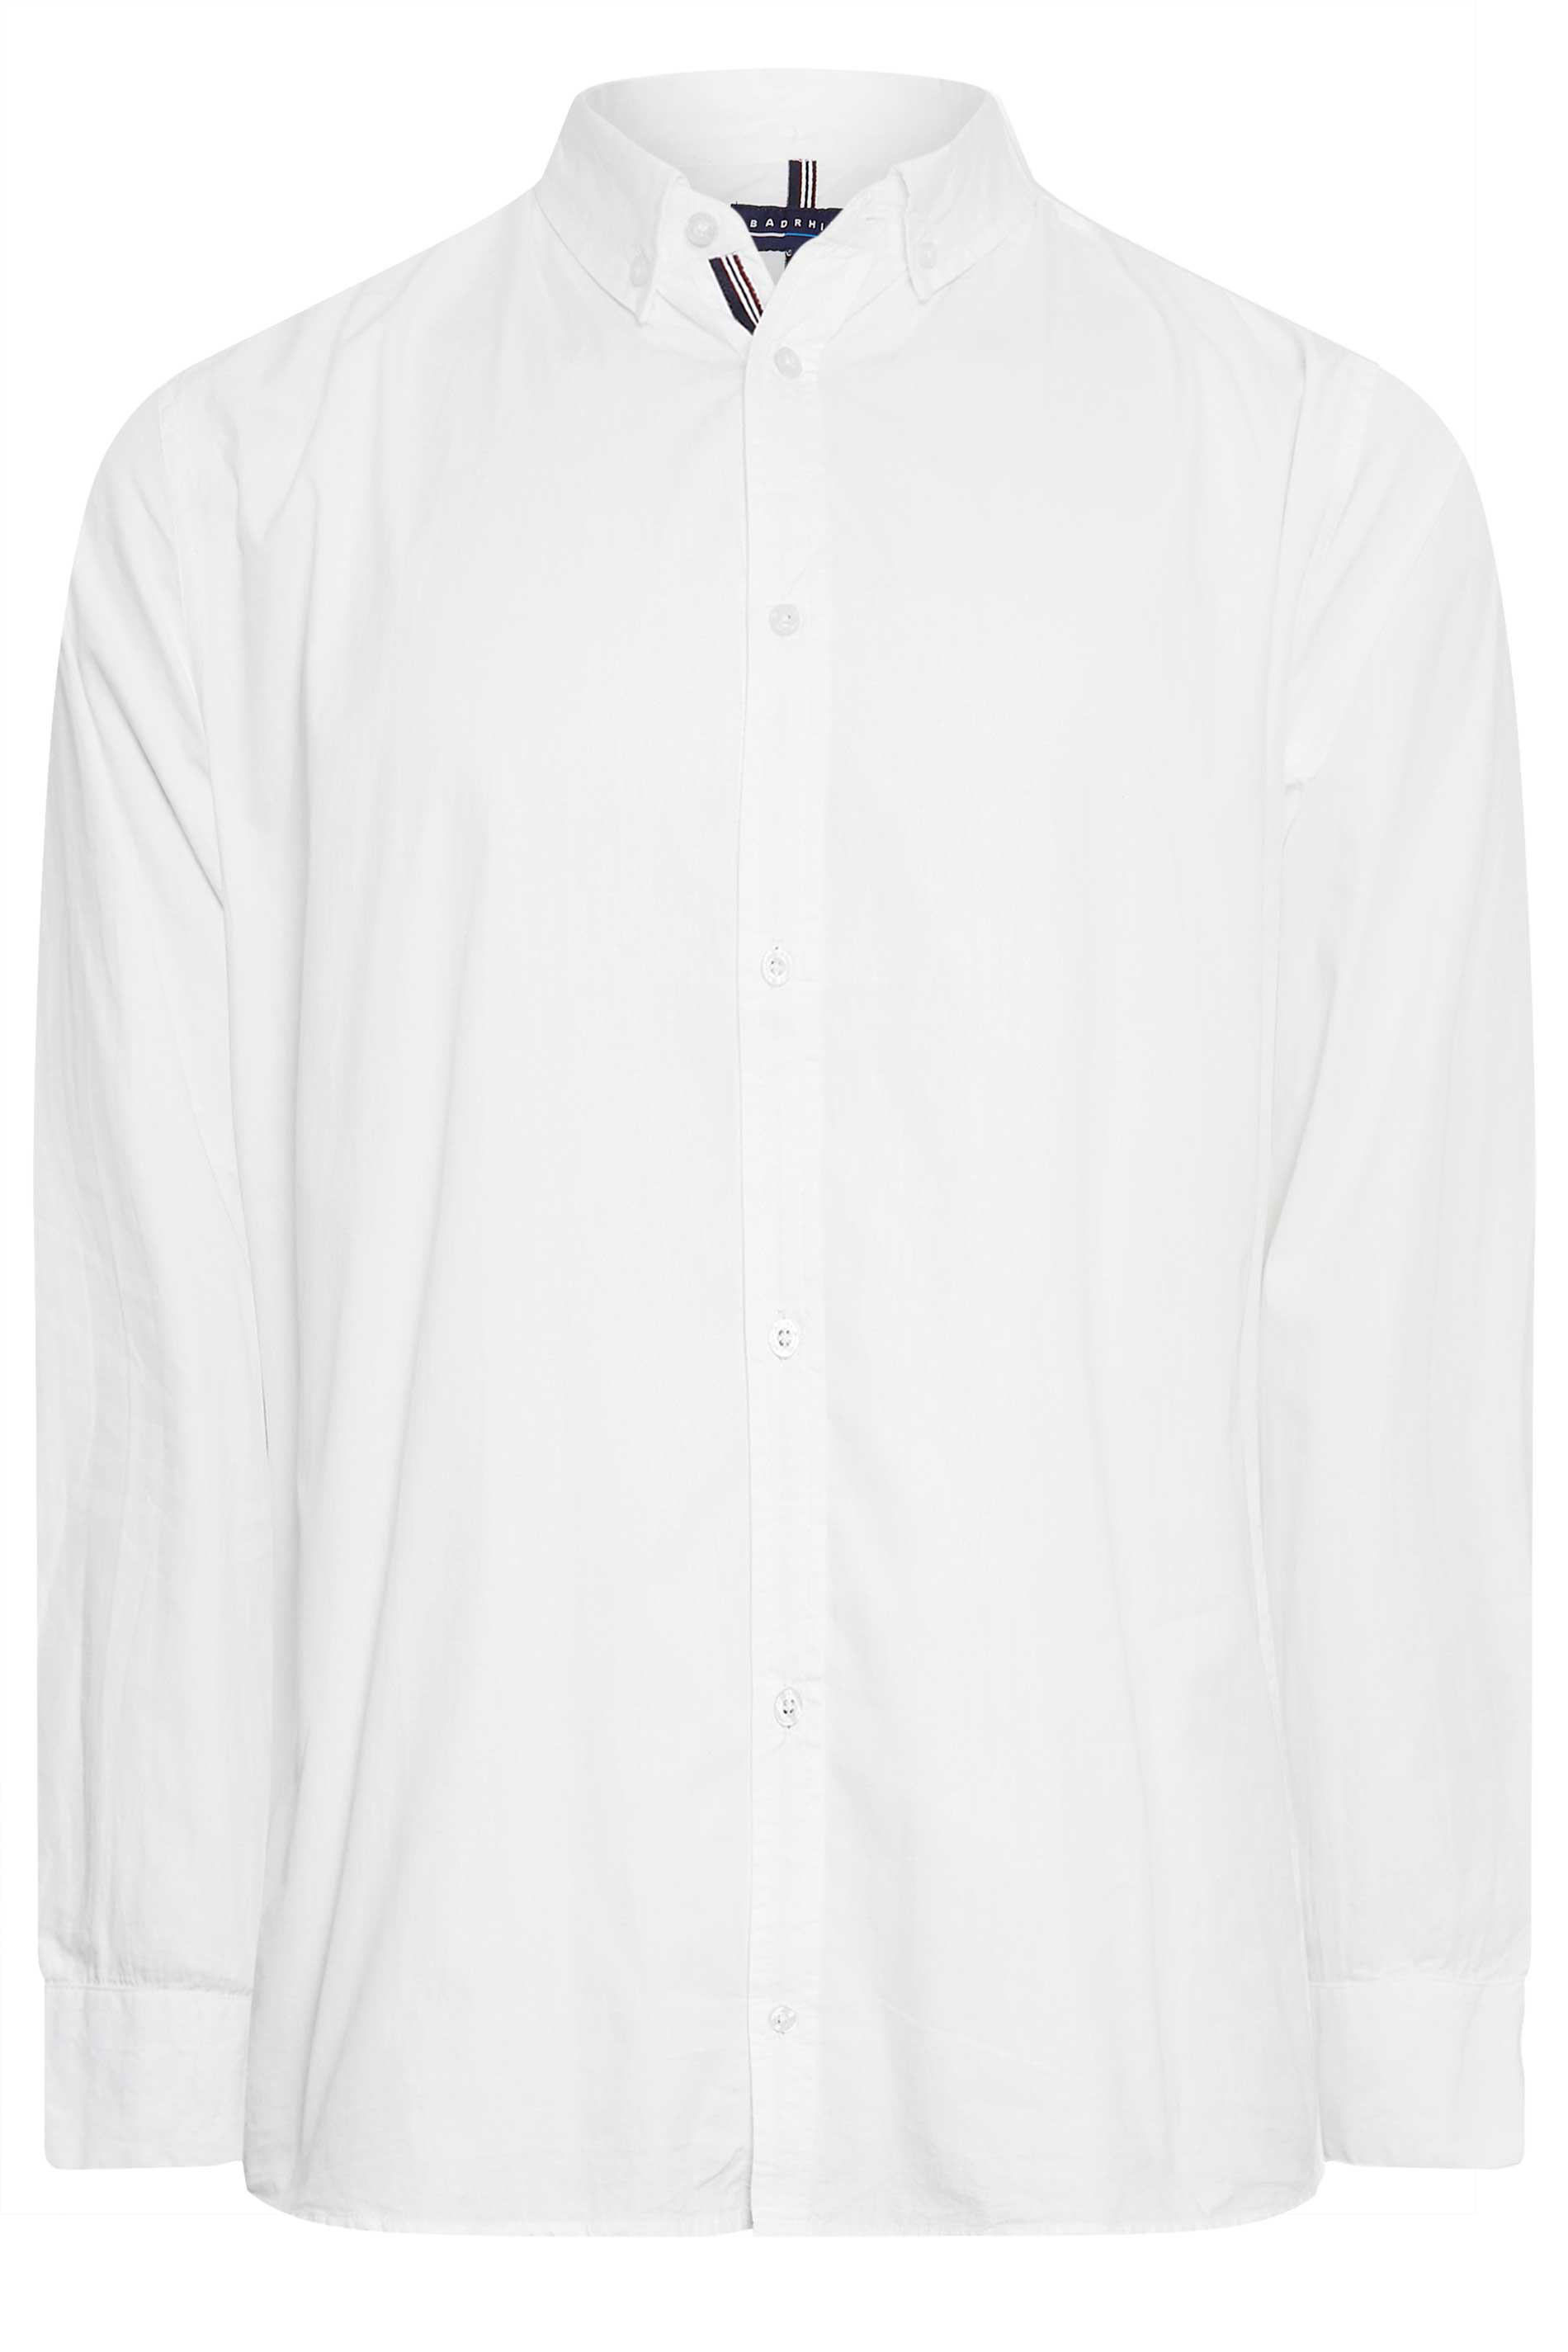 BadRhino Big & Tall White Poplin Shirt | BadRhino